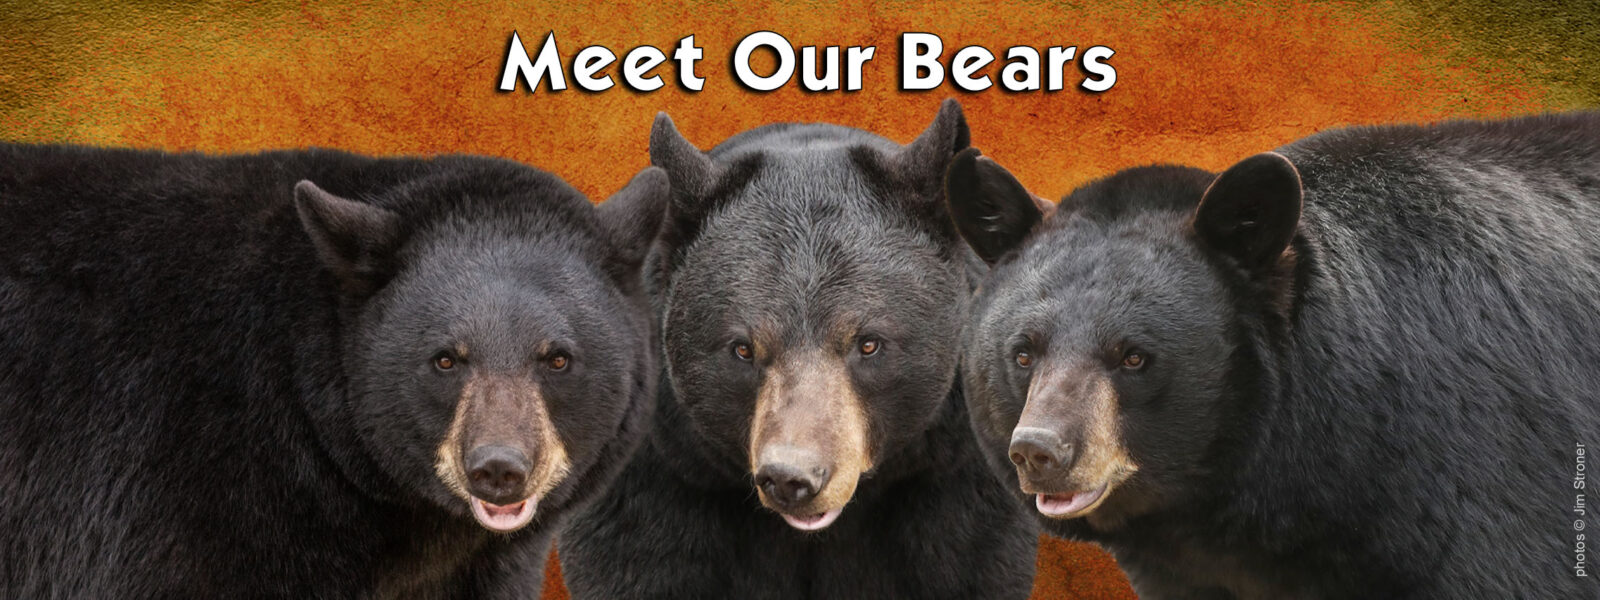 Meet our bears banner